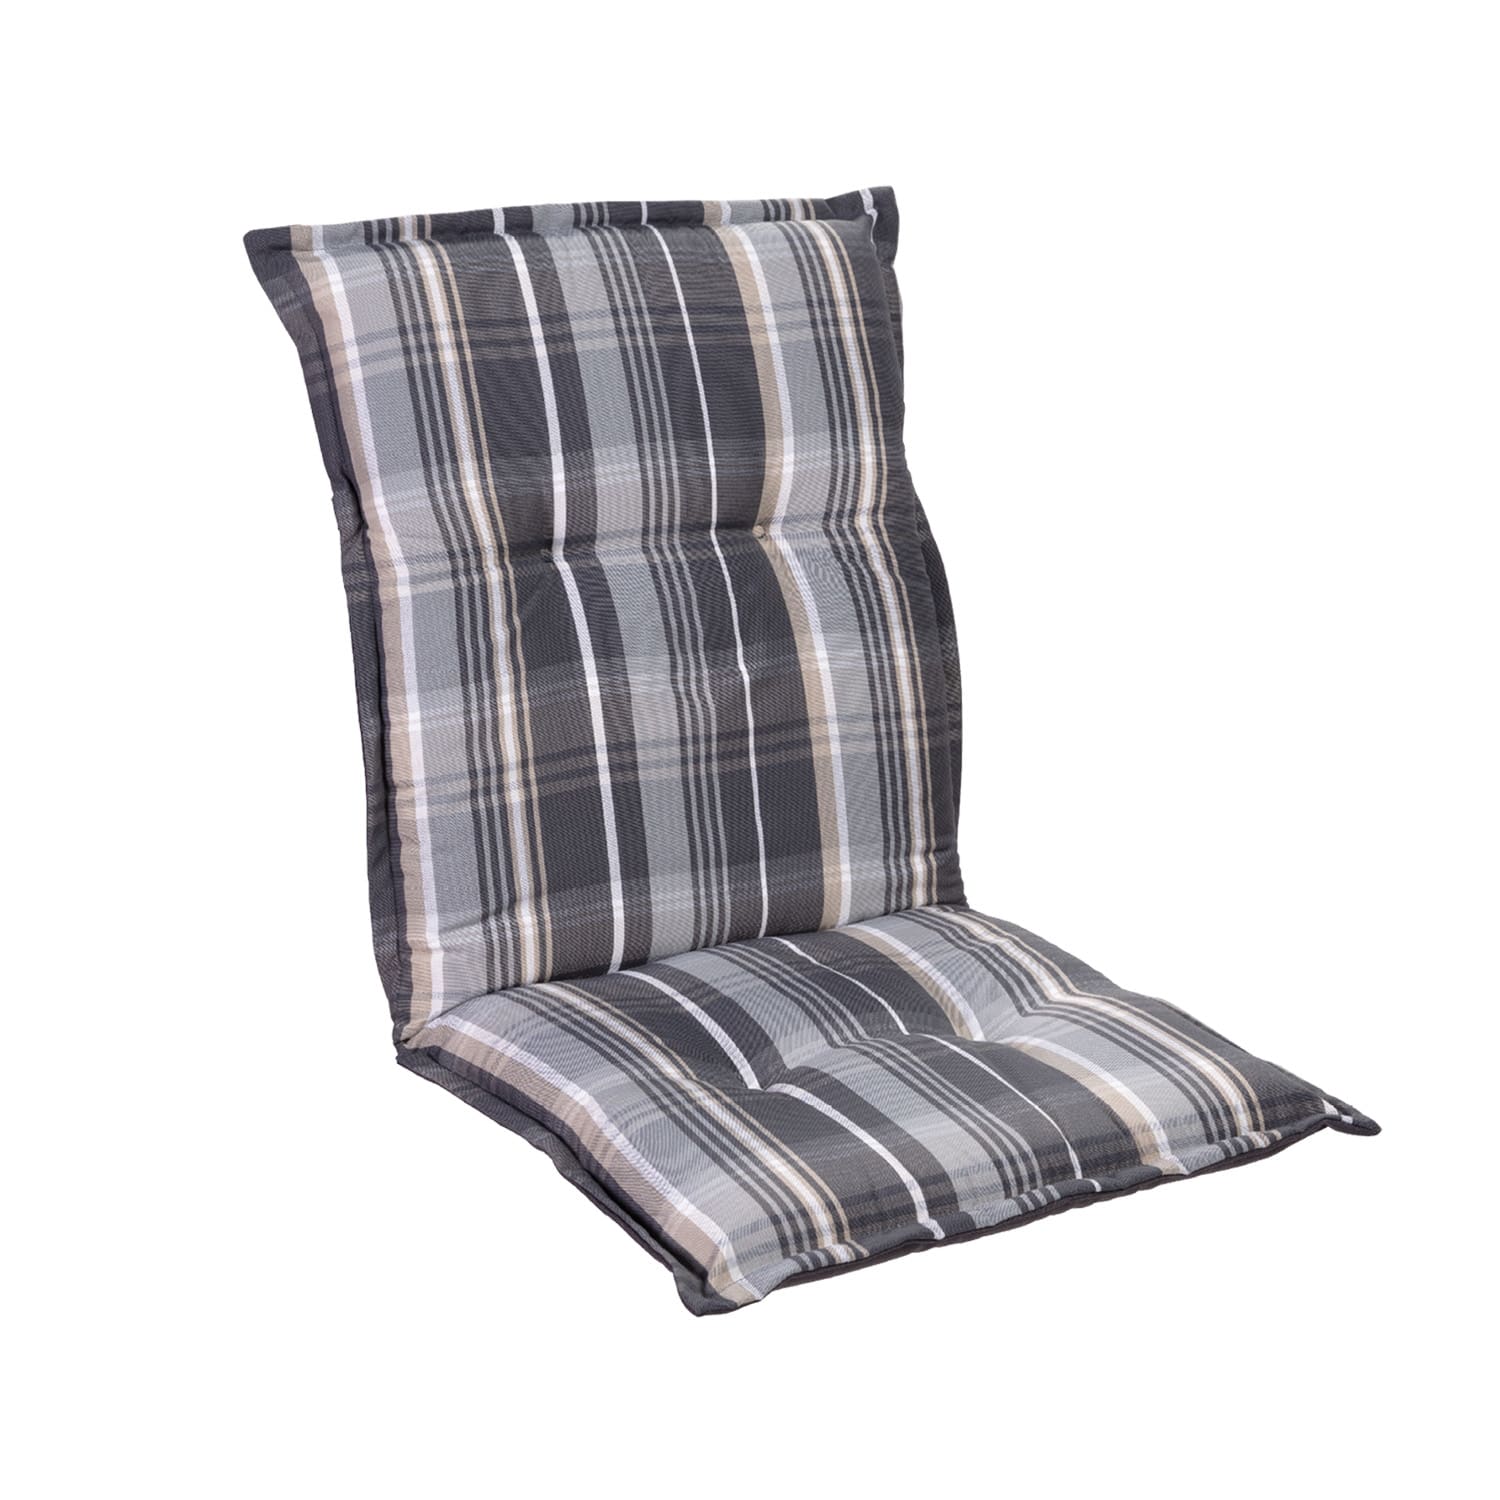 Levně Prato, čalouněná podložka, podložka na židli, podložka na nižší polohovací křeslo, na zahradní židli, polyester, 50 x 100 x 8 cm